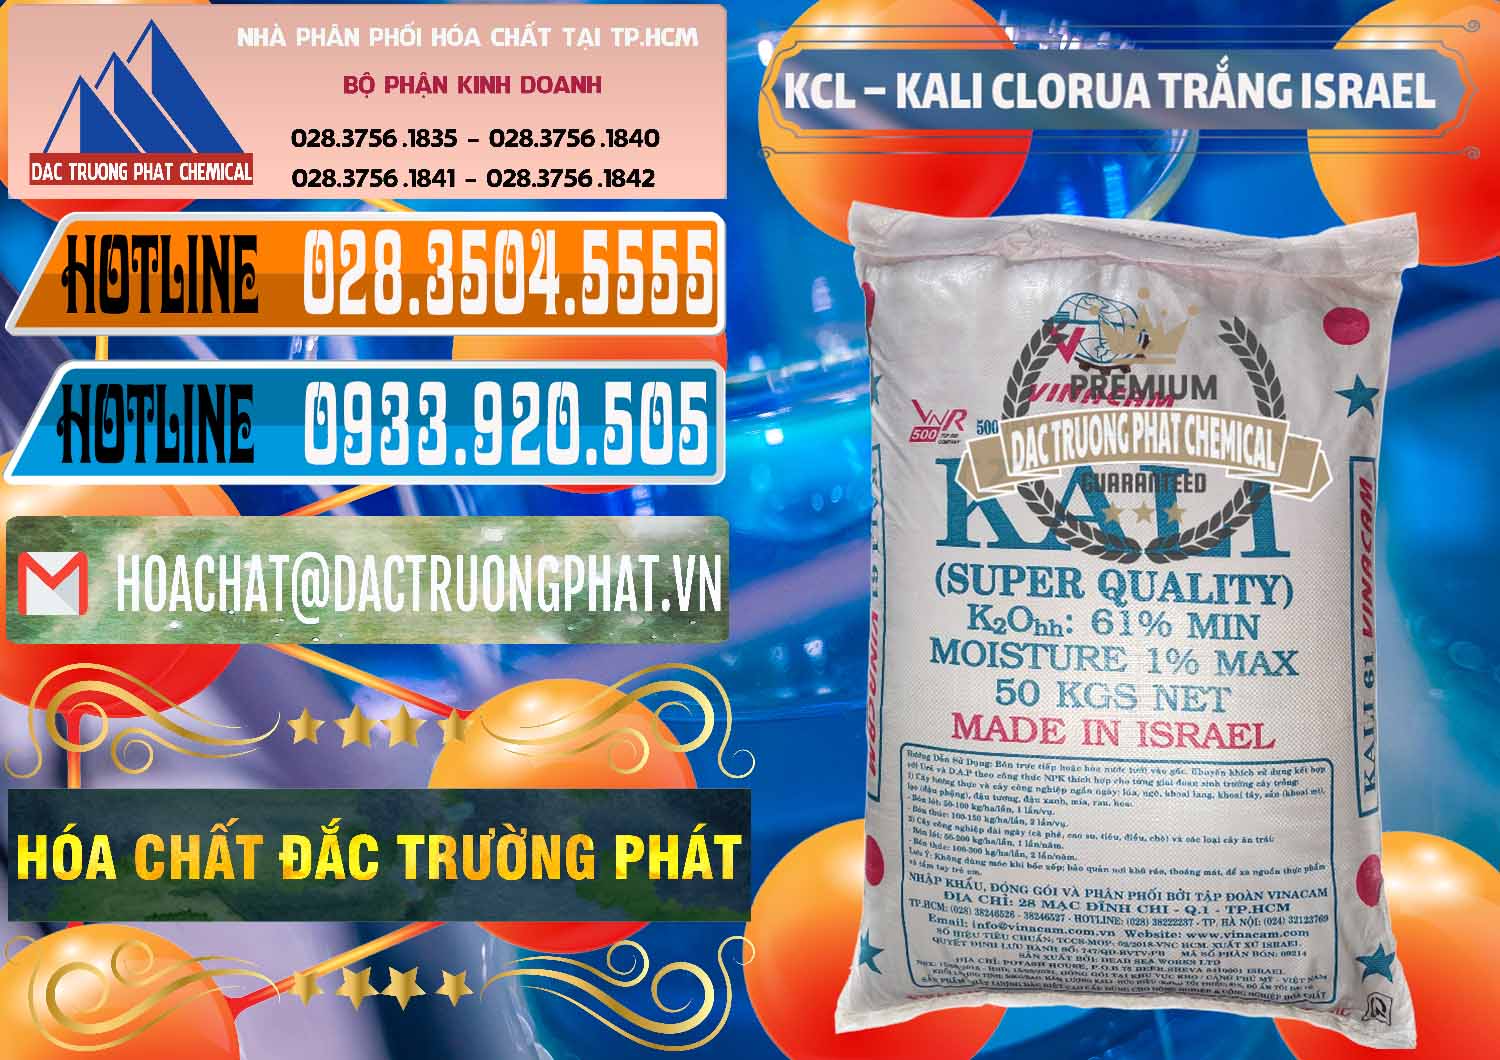 Đơn vị nhập khẩu - bán KCL – Kali Clorua Trắng Israel - 0087 - Chuyên phân phối ( bán ) hóa chất tại TP.HCM - stmp.net